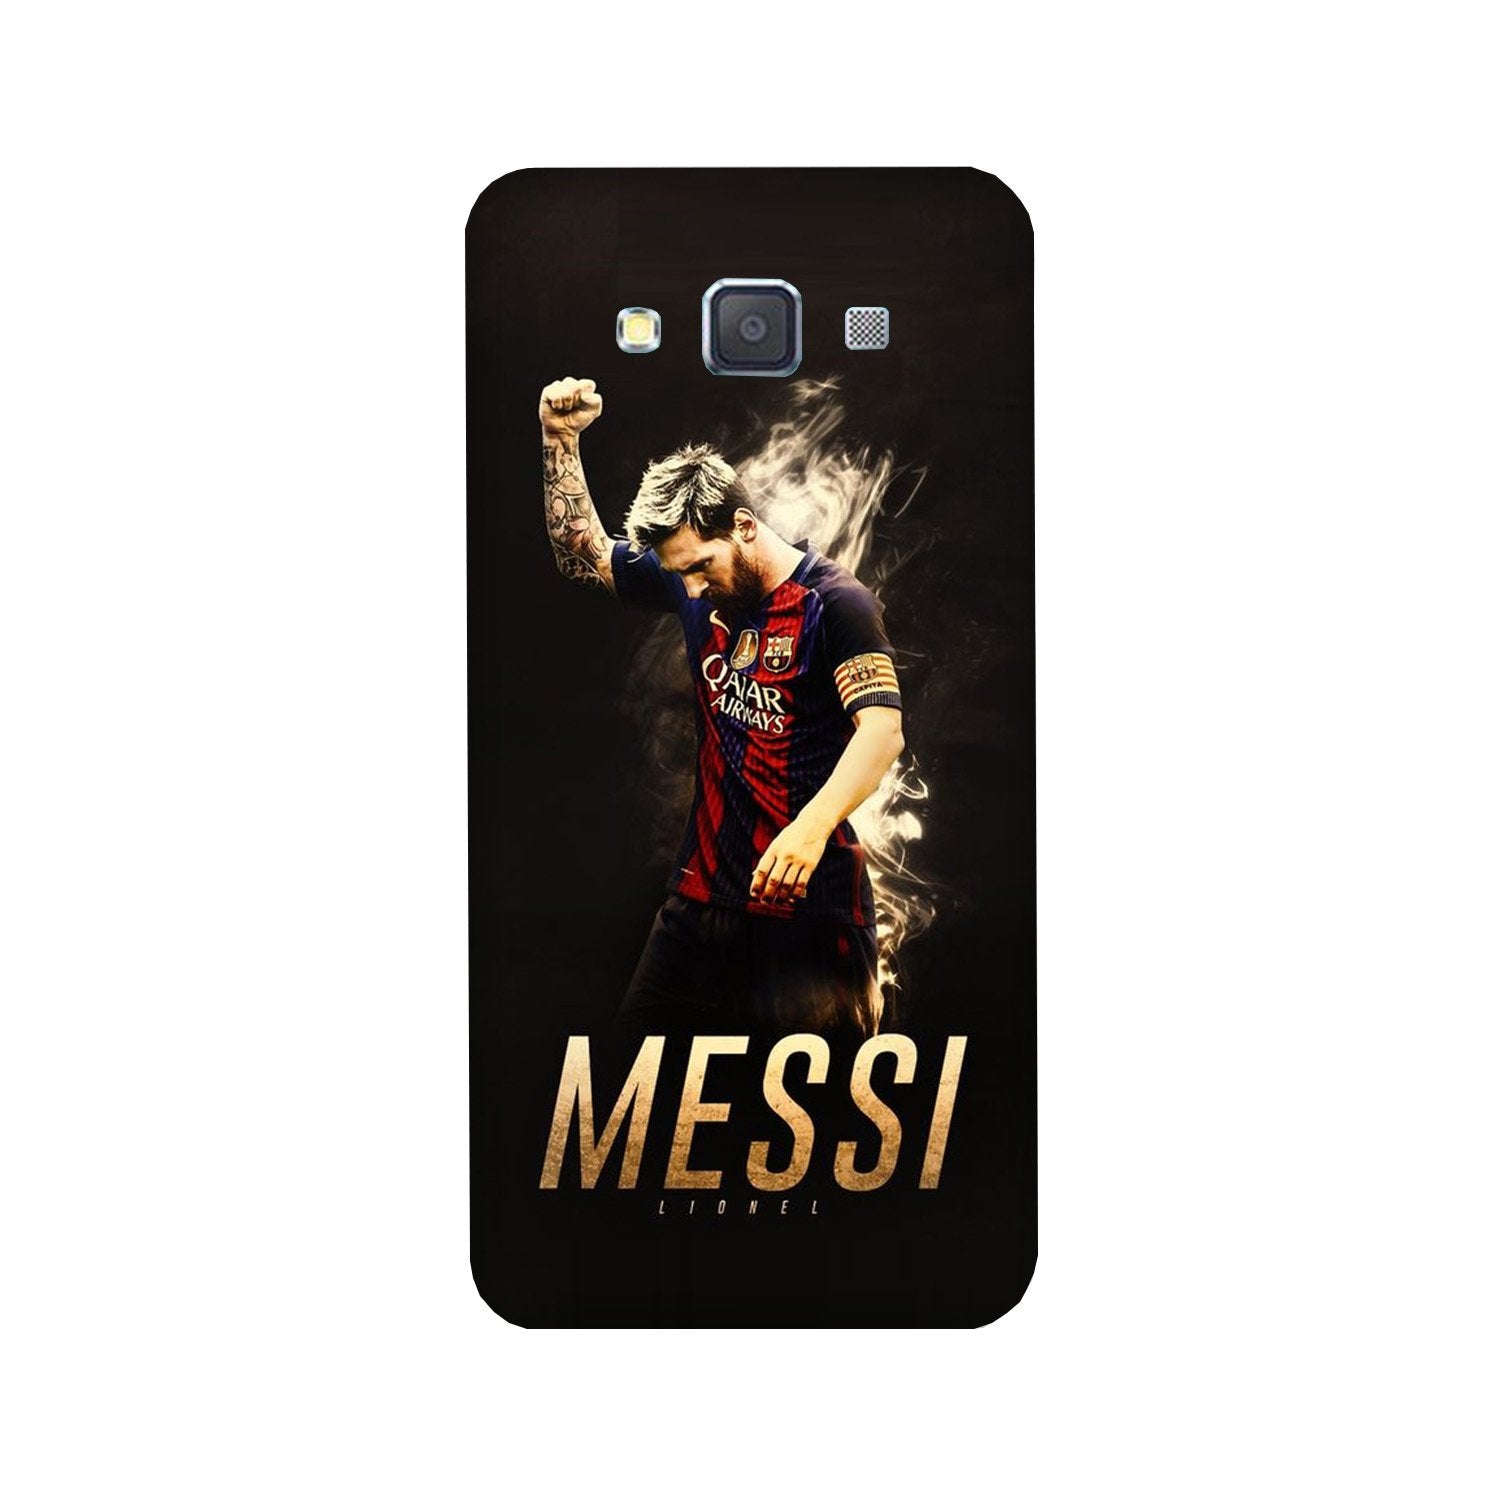 Messi Case for Galaxy Grand Max(Design - 163)